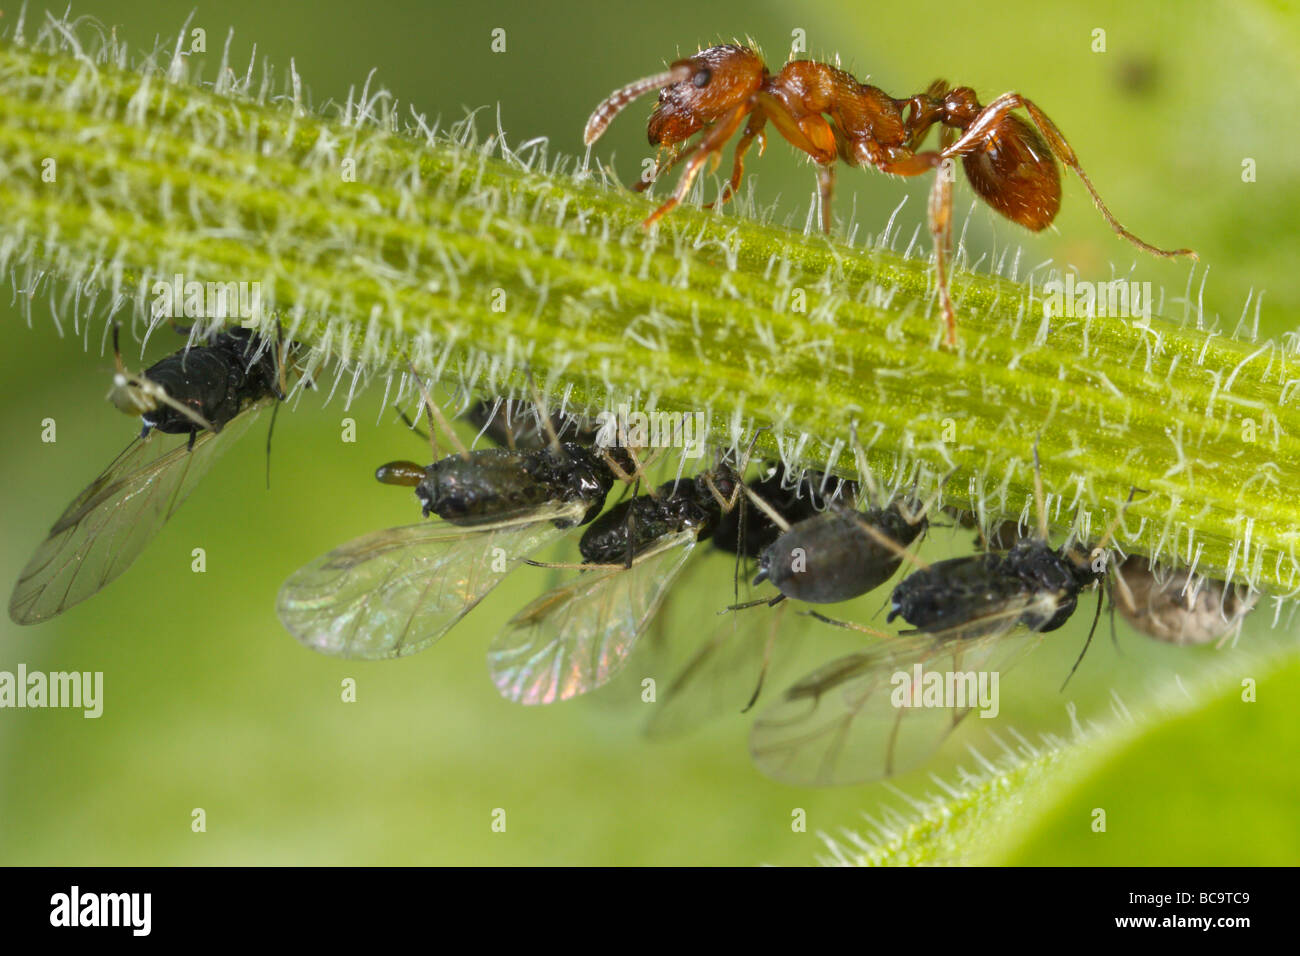 Hormiga Myrmica tendiendo a los áfidos. Ellos leche estos pulgones, el melón es muy rico en azúcar. Foto de stock